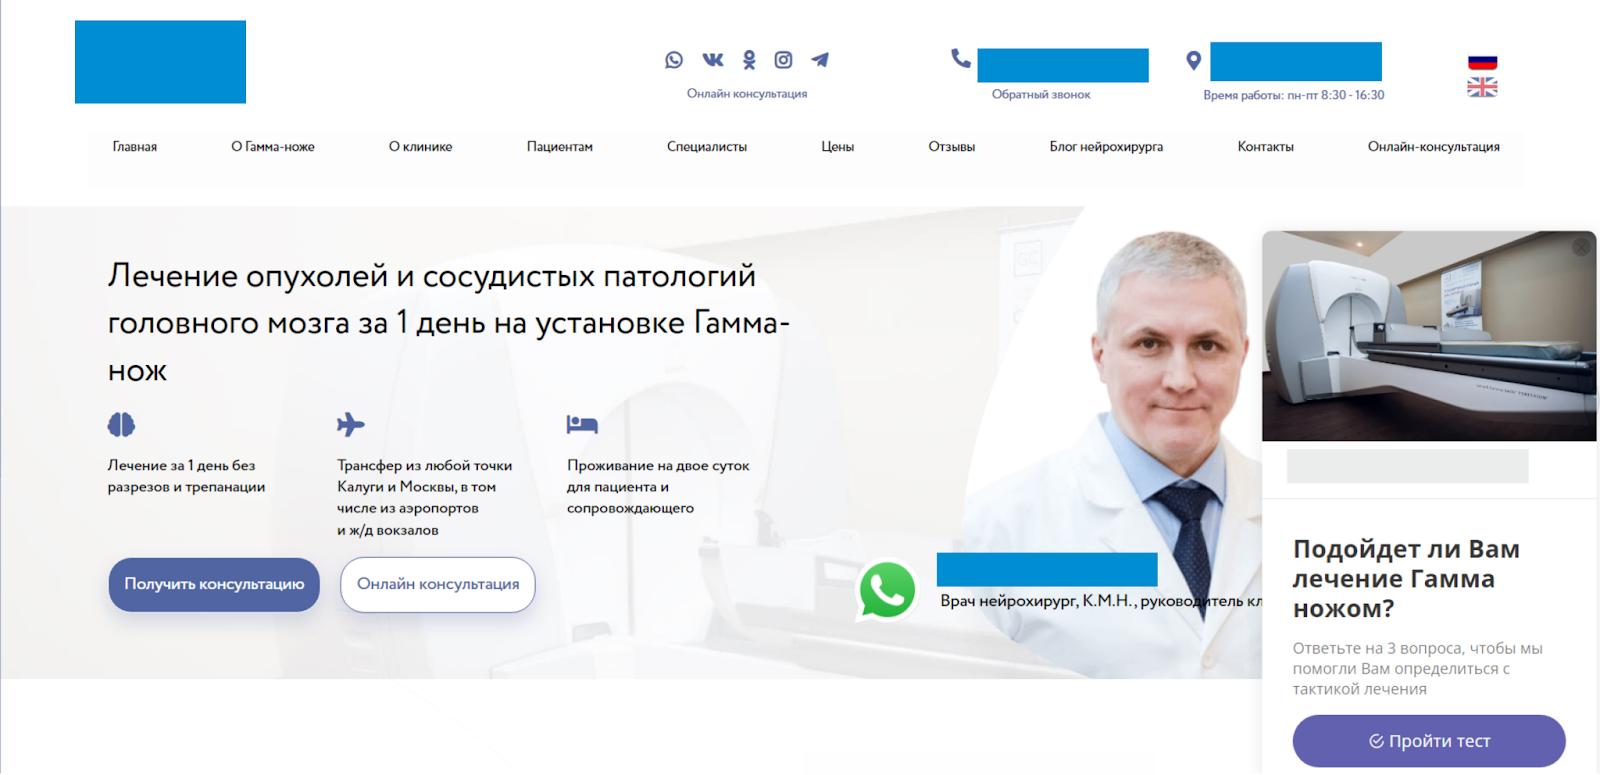 Реклама медицинского центра. Реклама клиники 1881 Хабаровск. Сайты больниц города москва